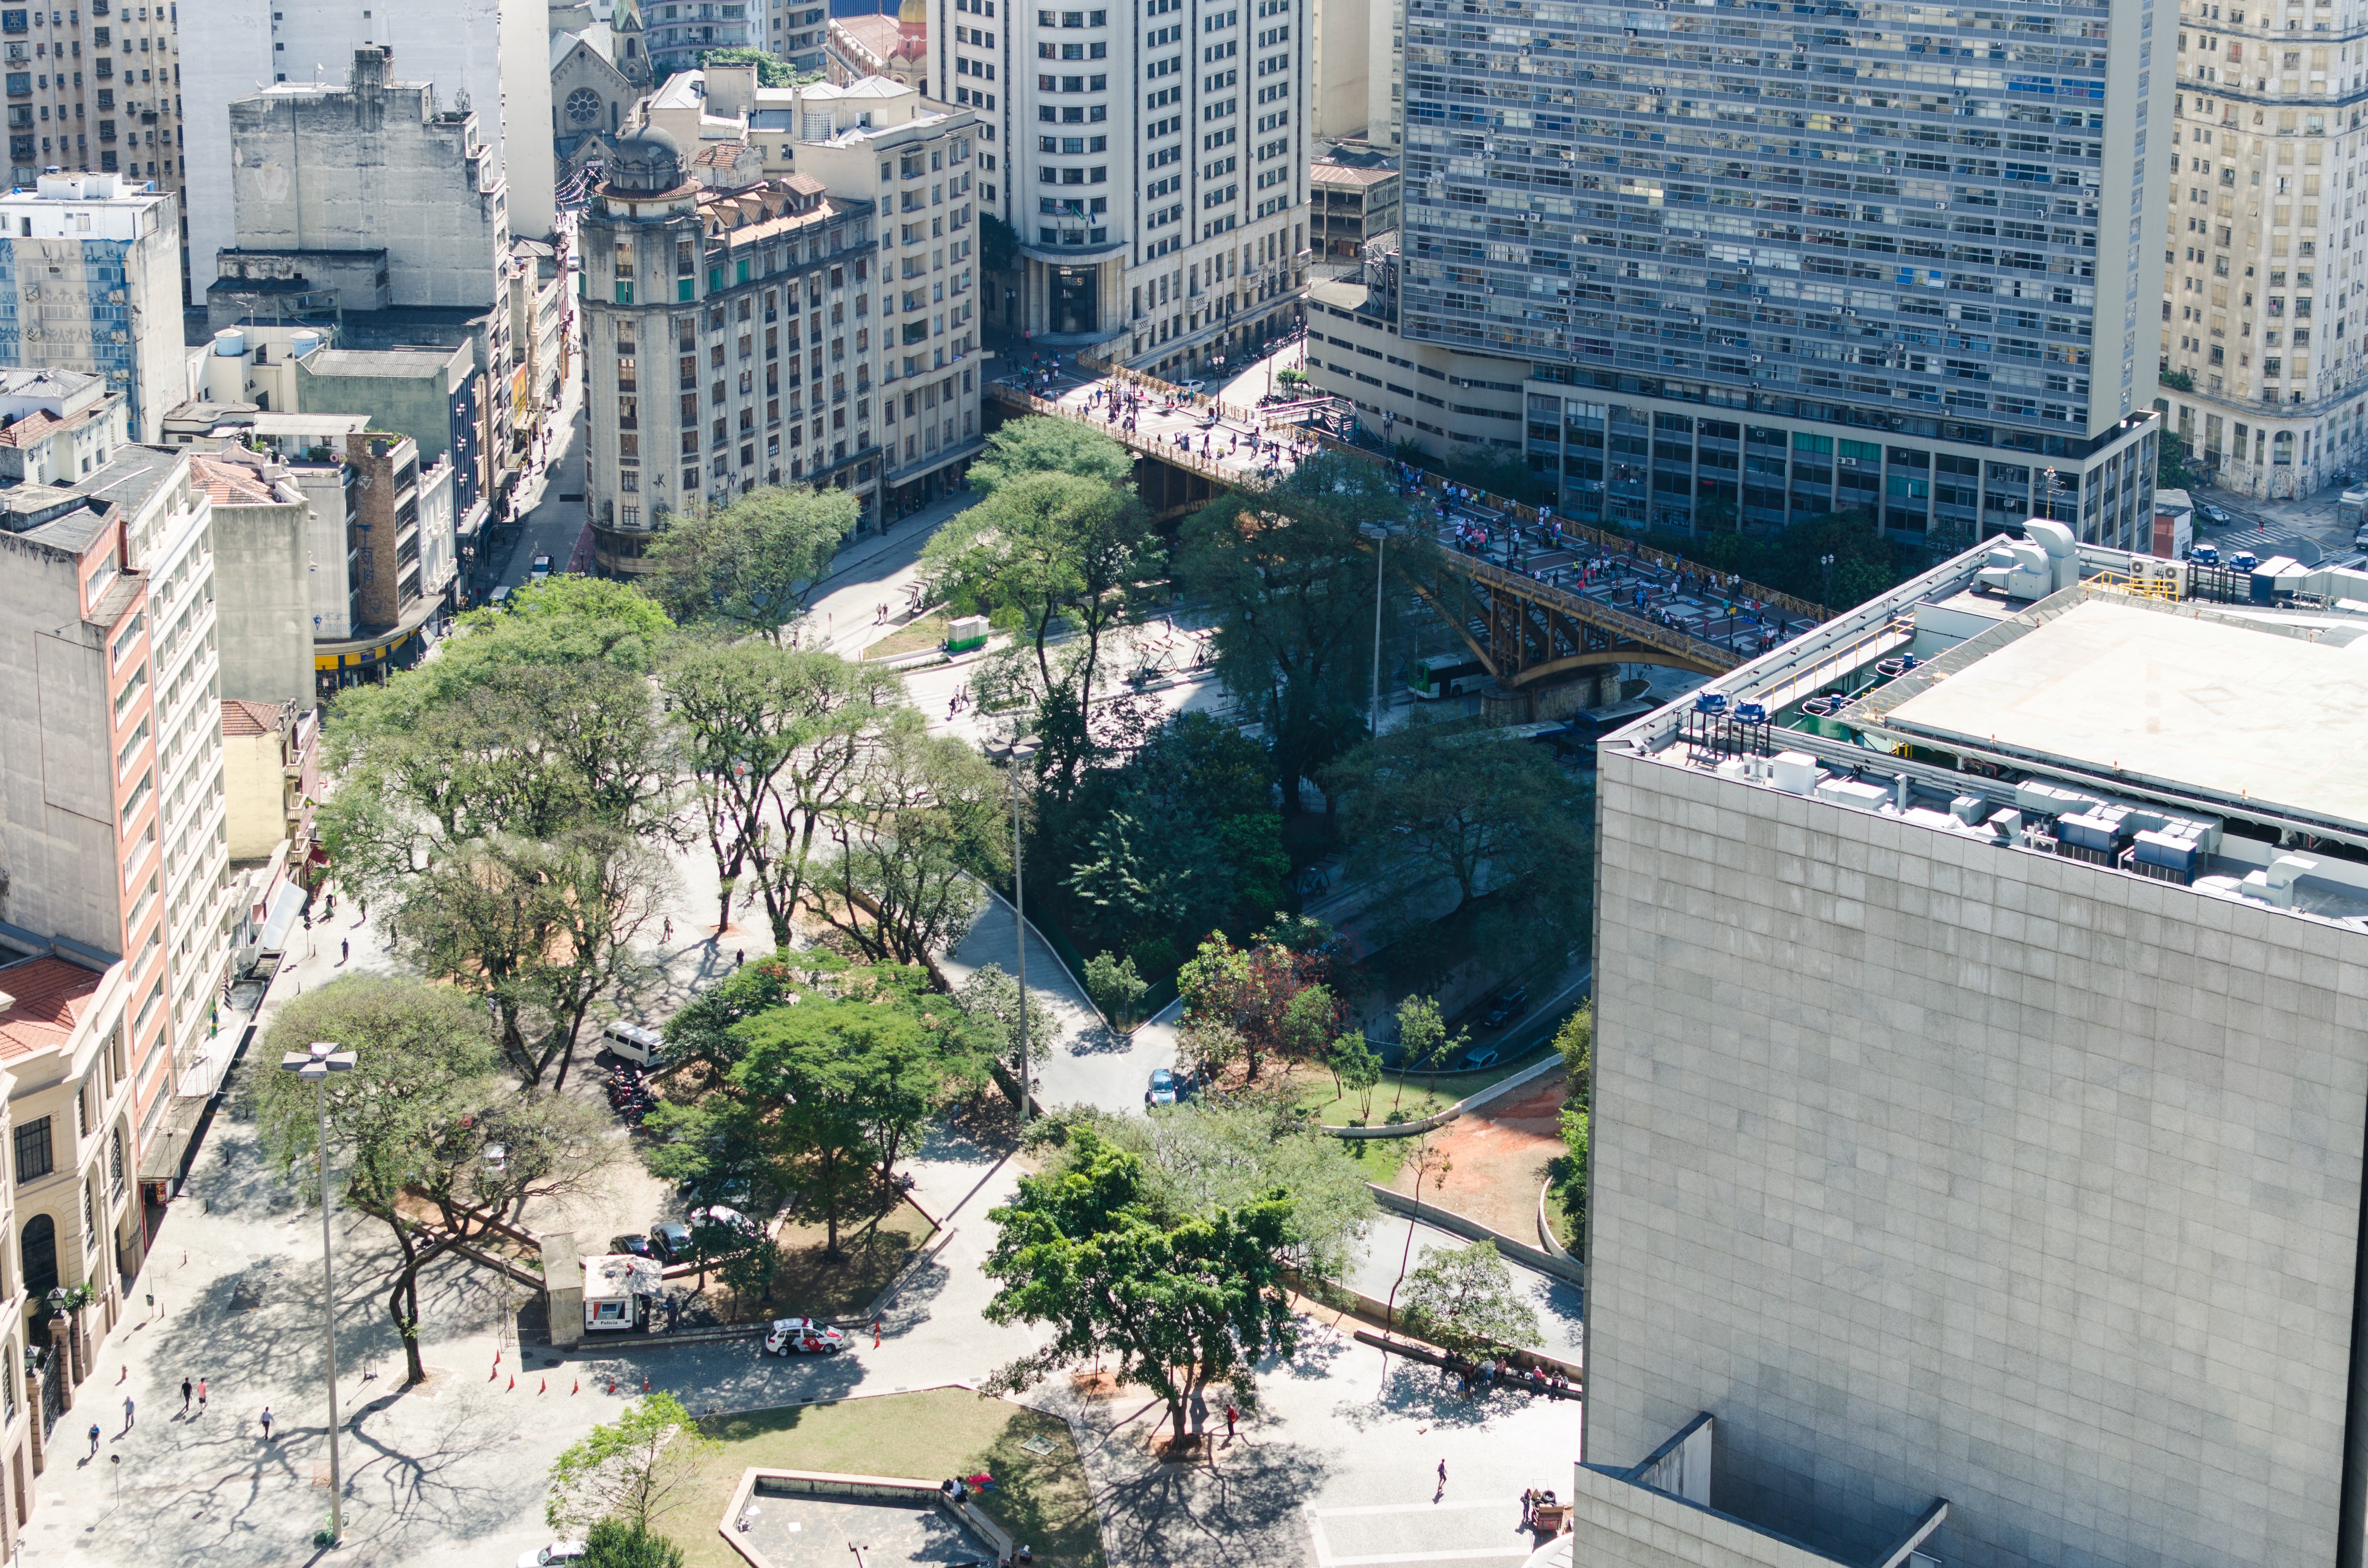 Parcerias para a sustentabilidade do Hospital Evangélico de Belo Horizonte  - Diário do Comércio